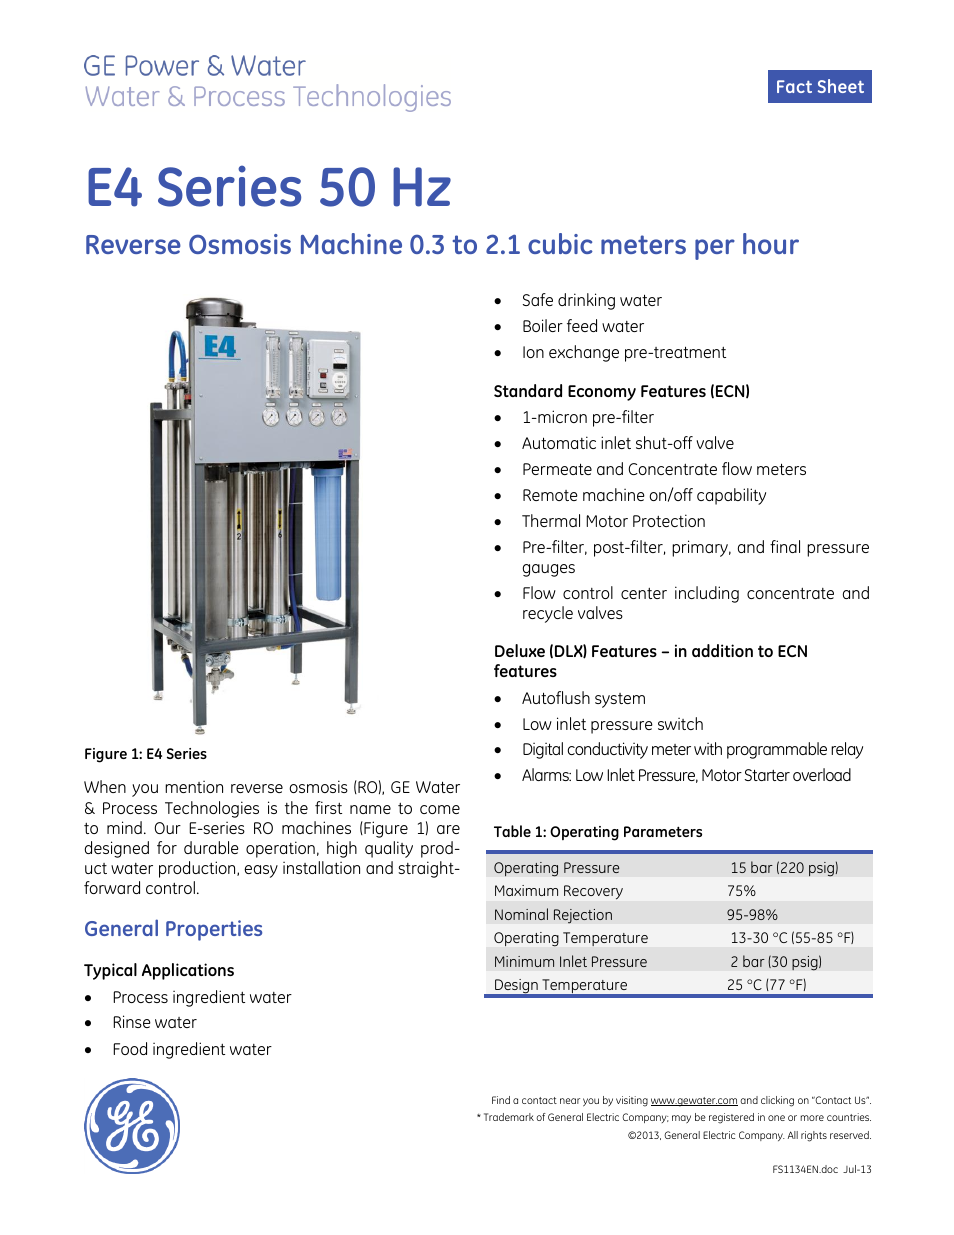 E-Series Reverse Osmosis - E4 50 Hz